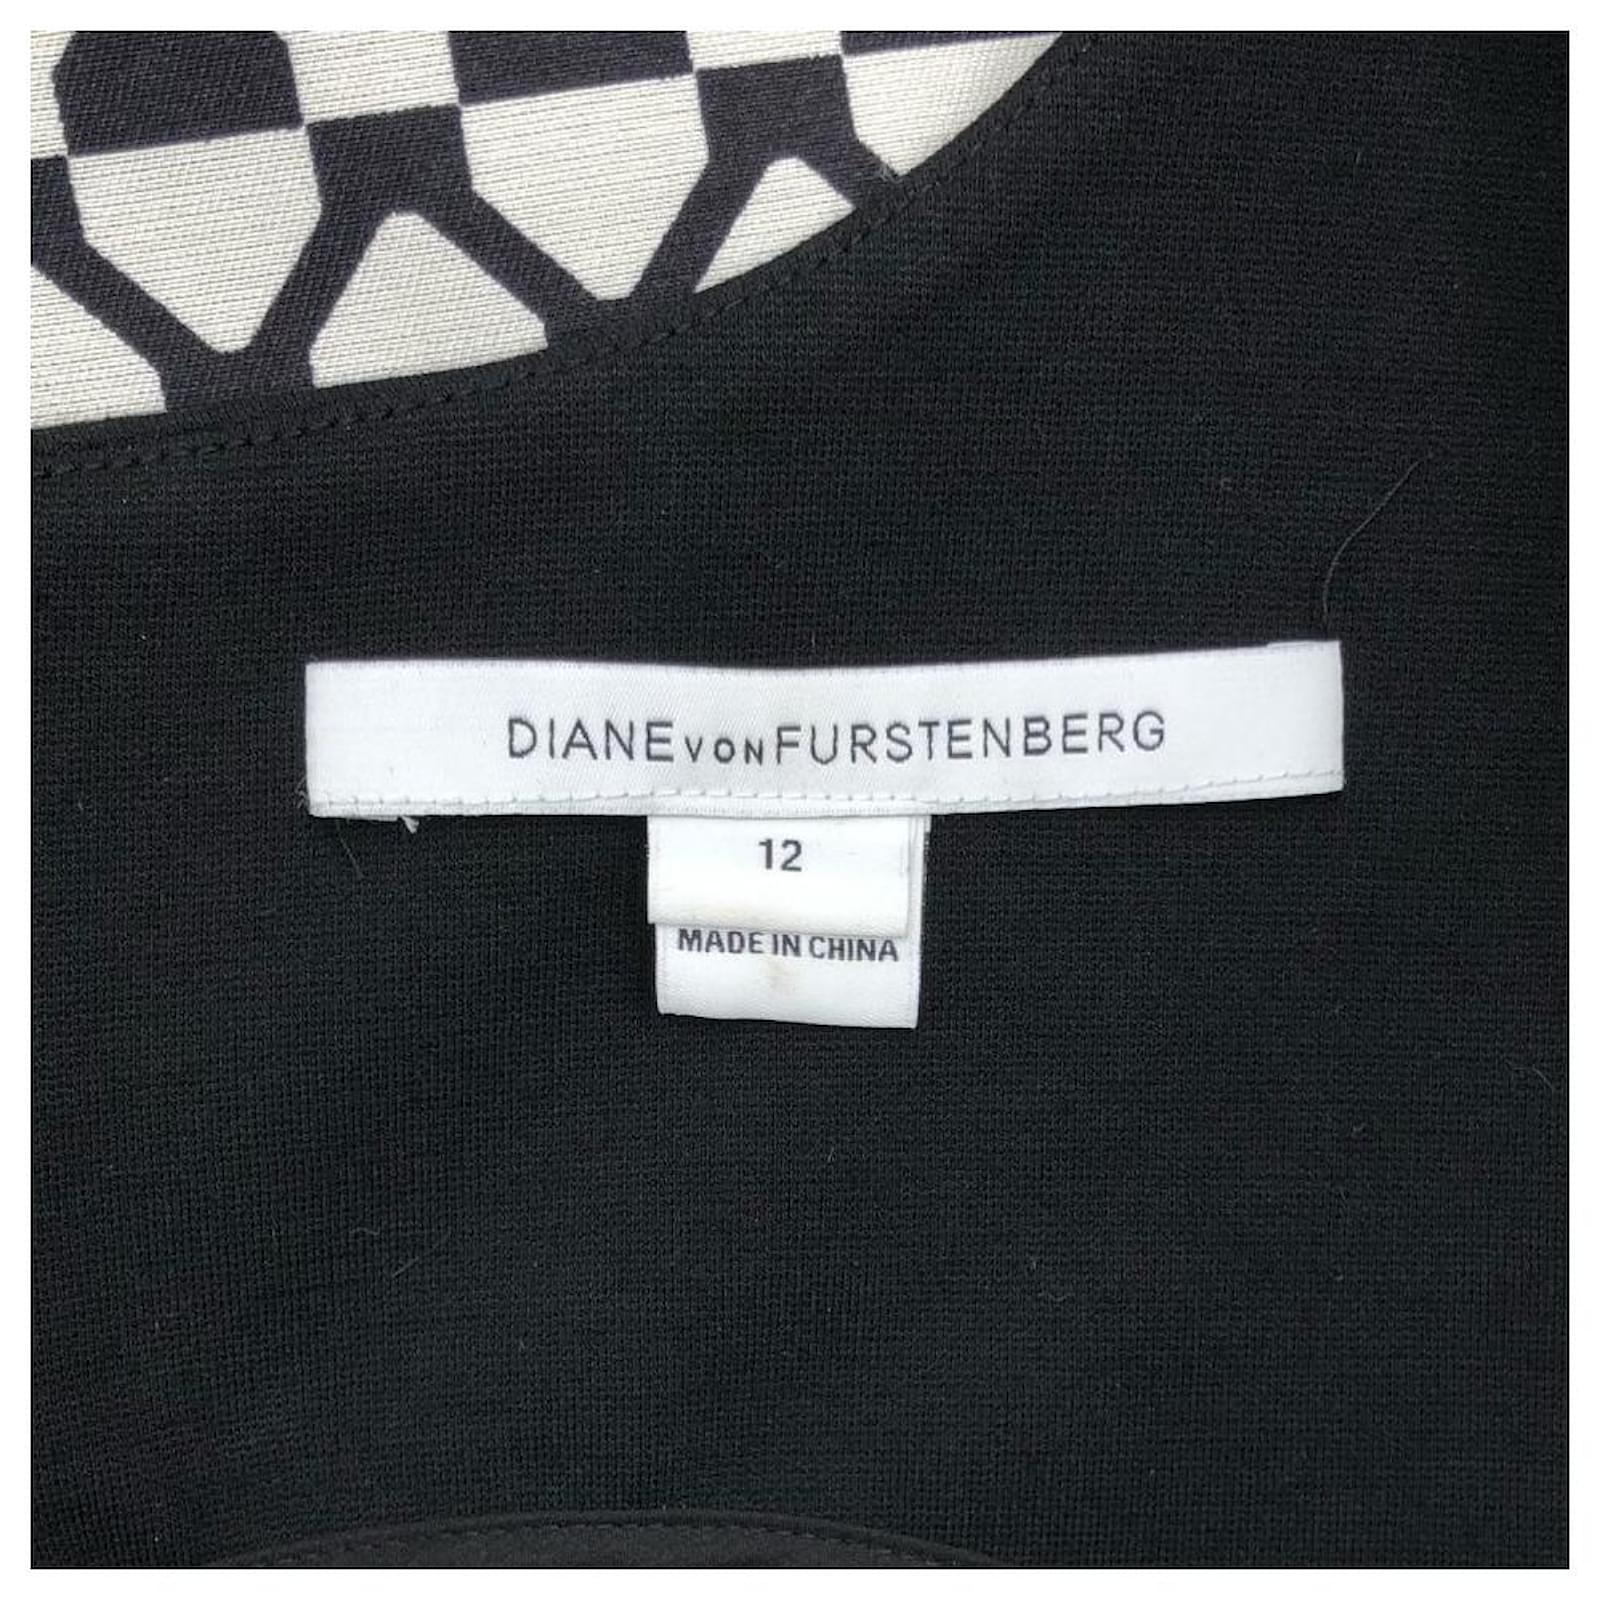 Diane Von Furstenberg DVF shift dress in black and white silk blend ...